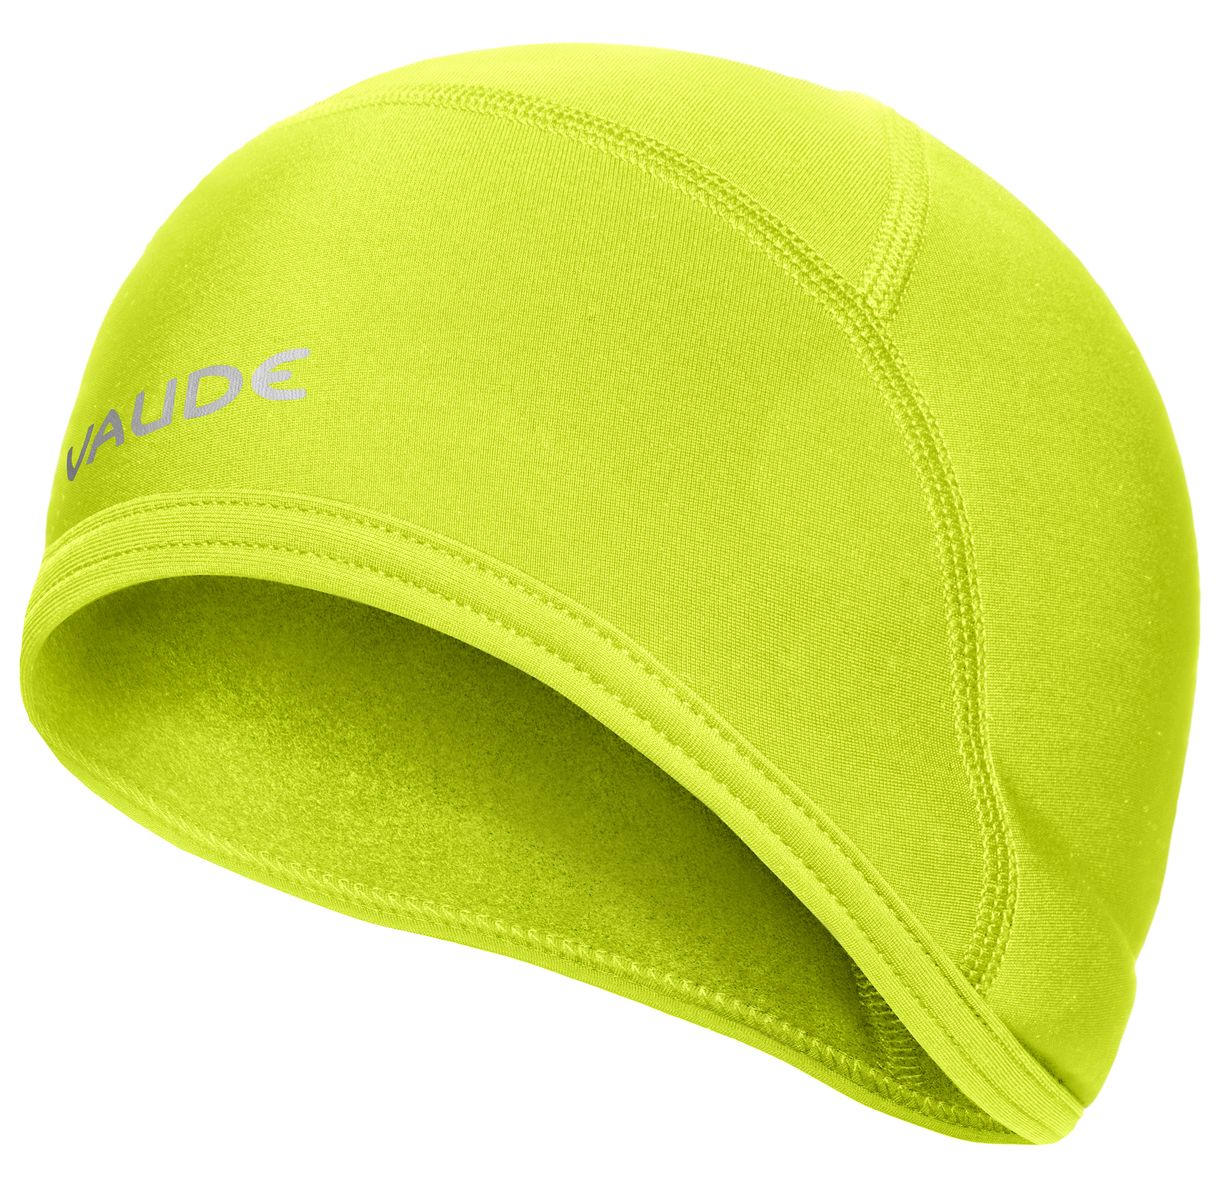 Vaude Bike Warm Cap | cap underwear helmet breathable